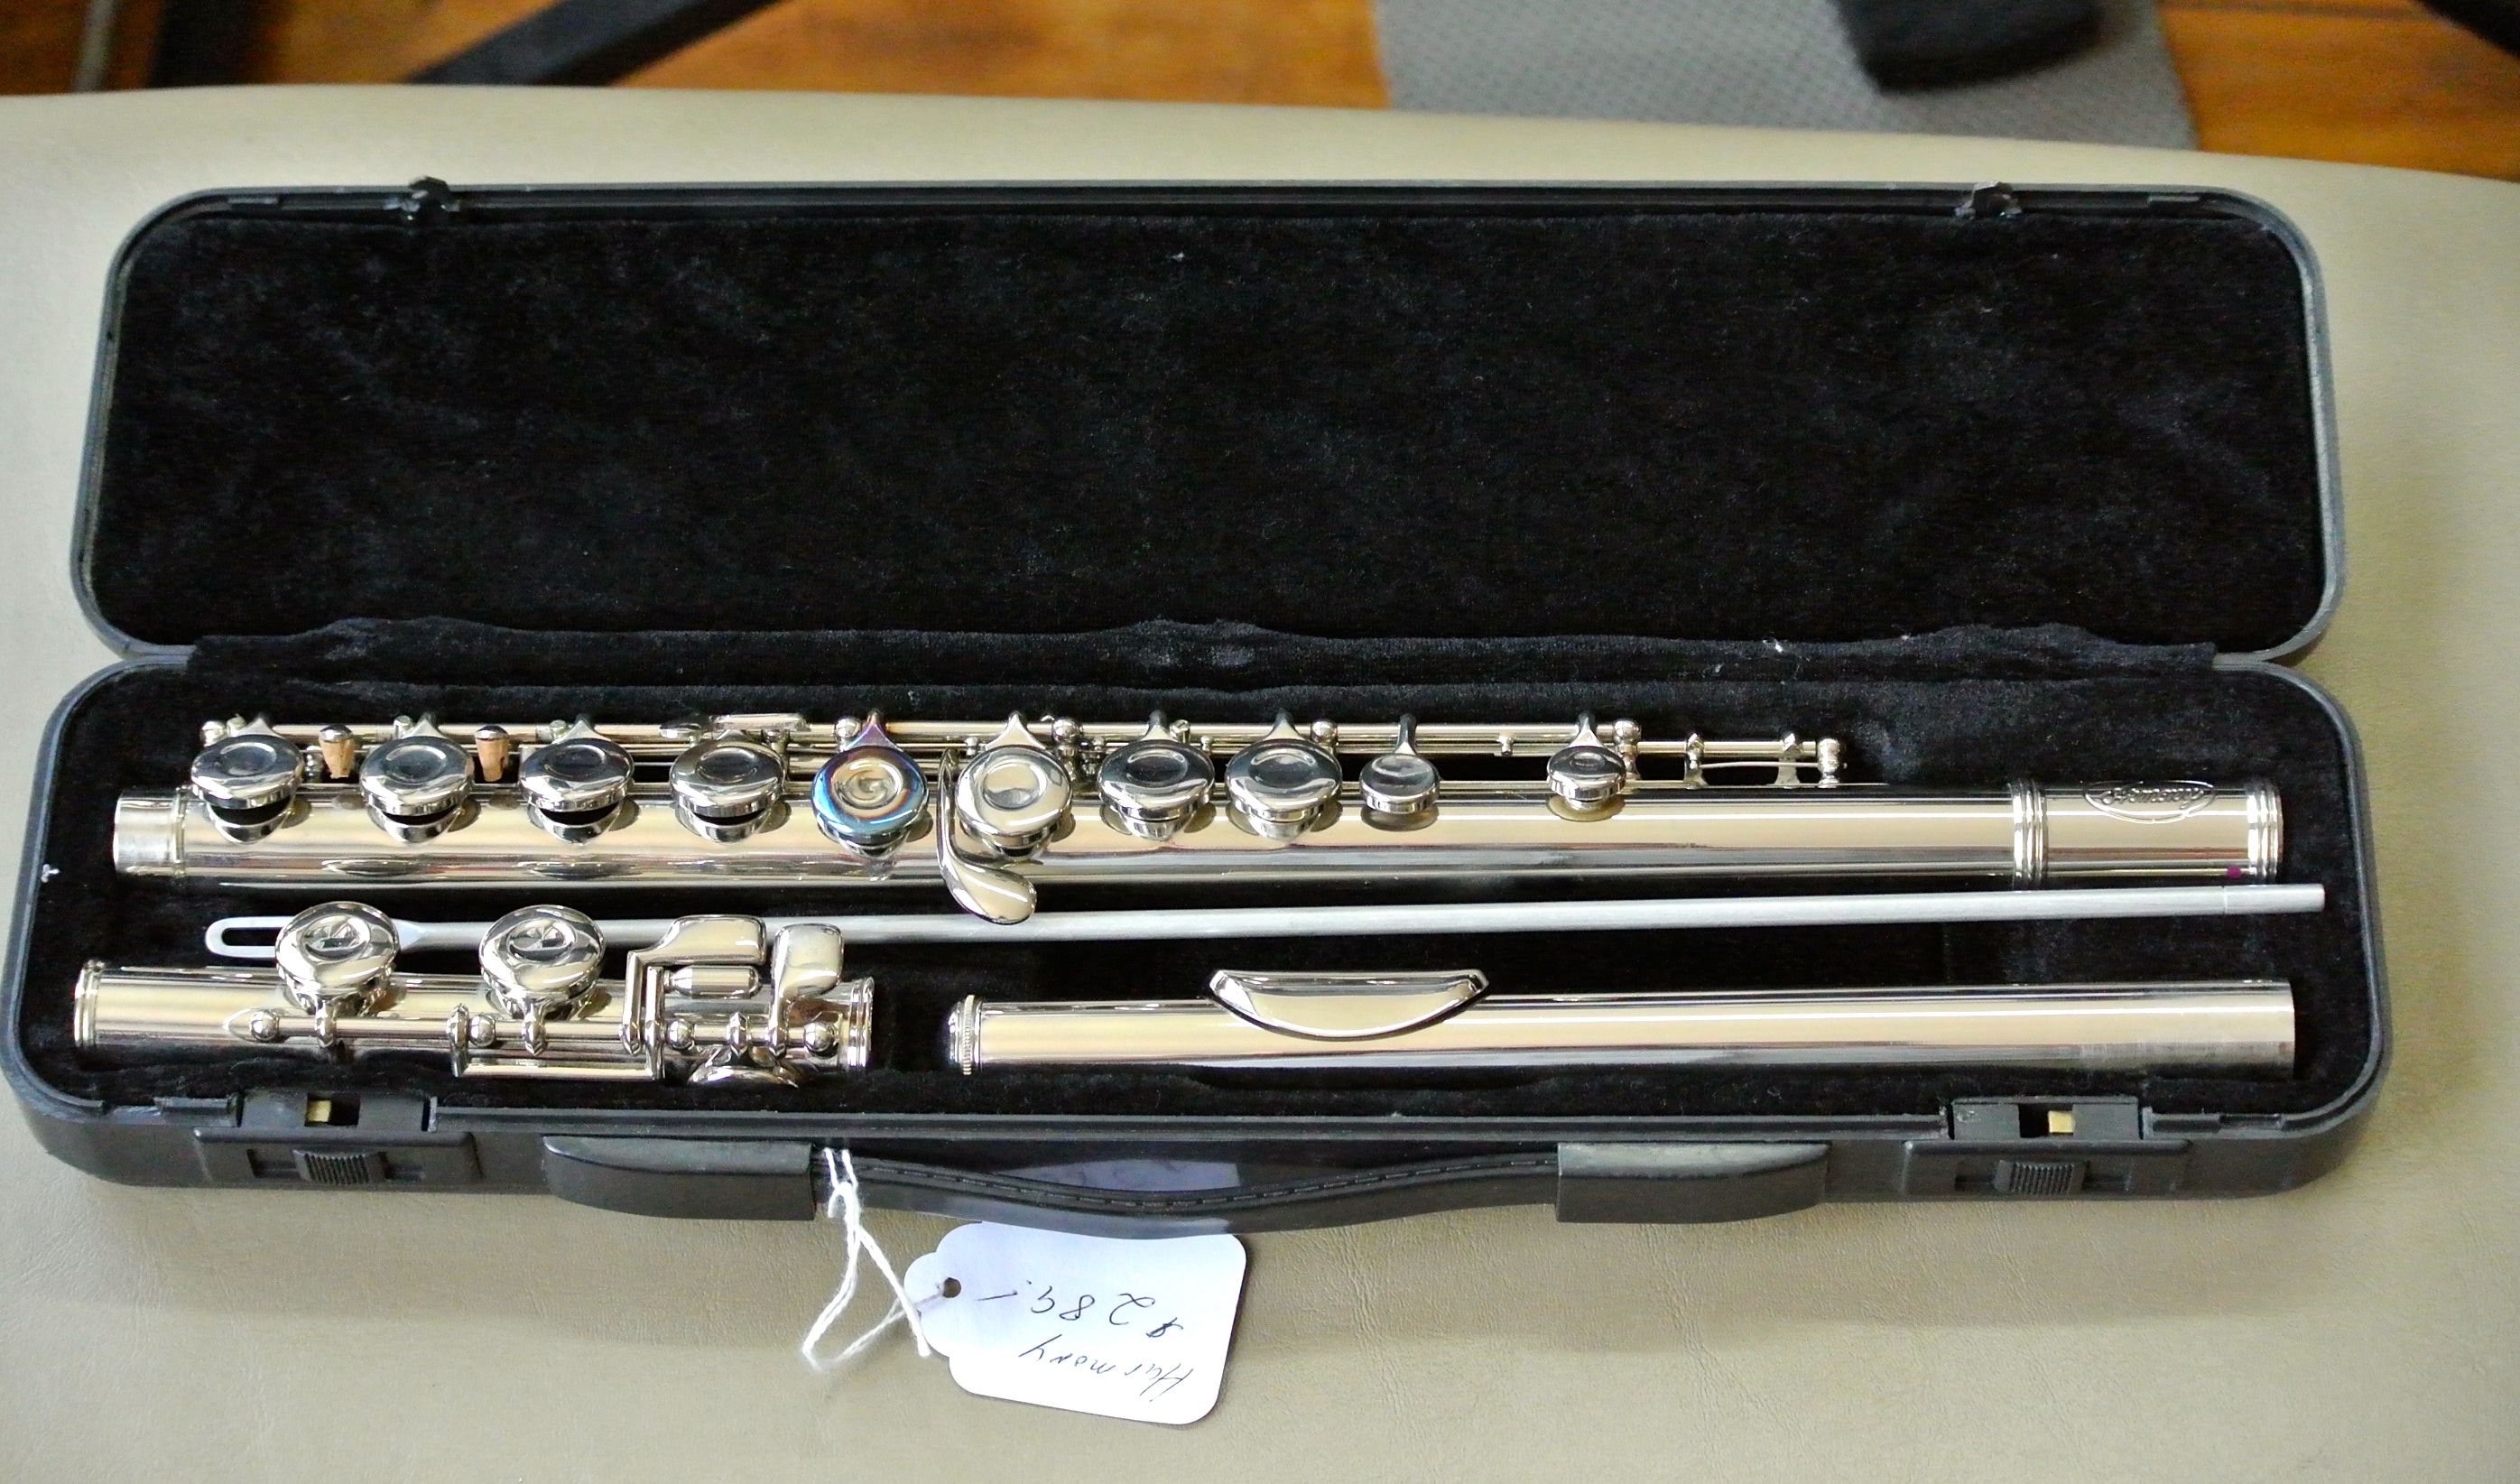 Used Harmony Flute